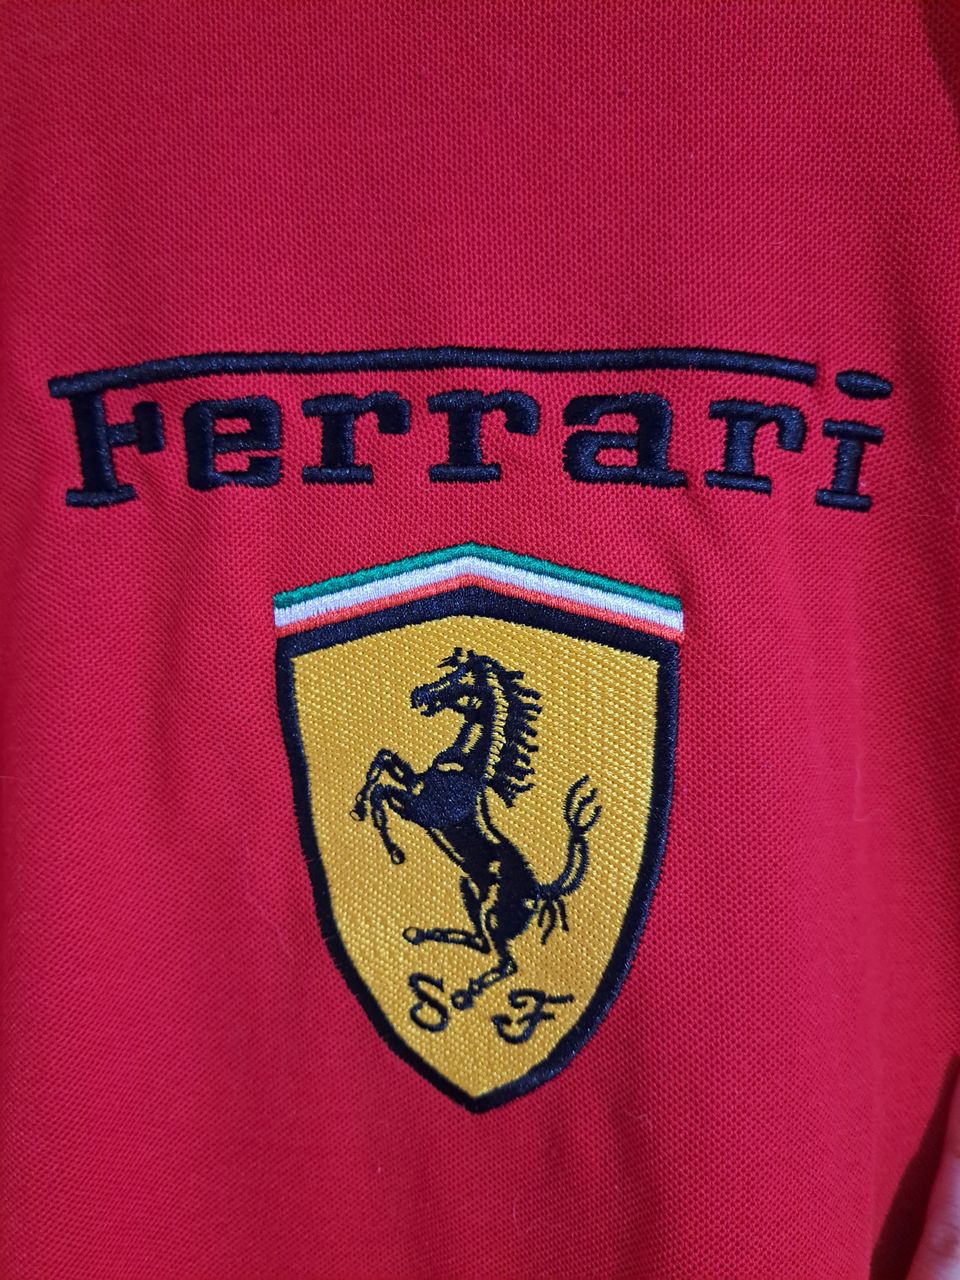 Aito Ferrarin paita.